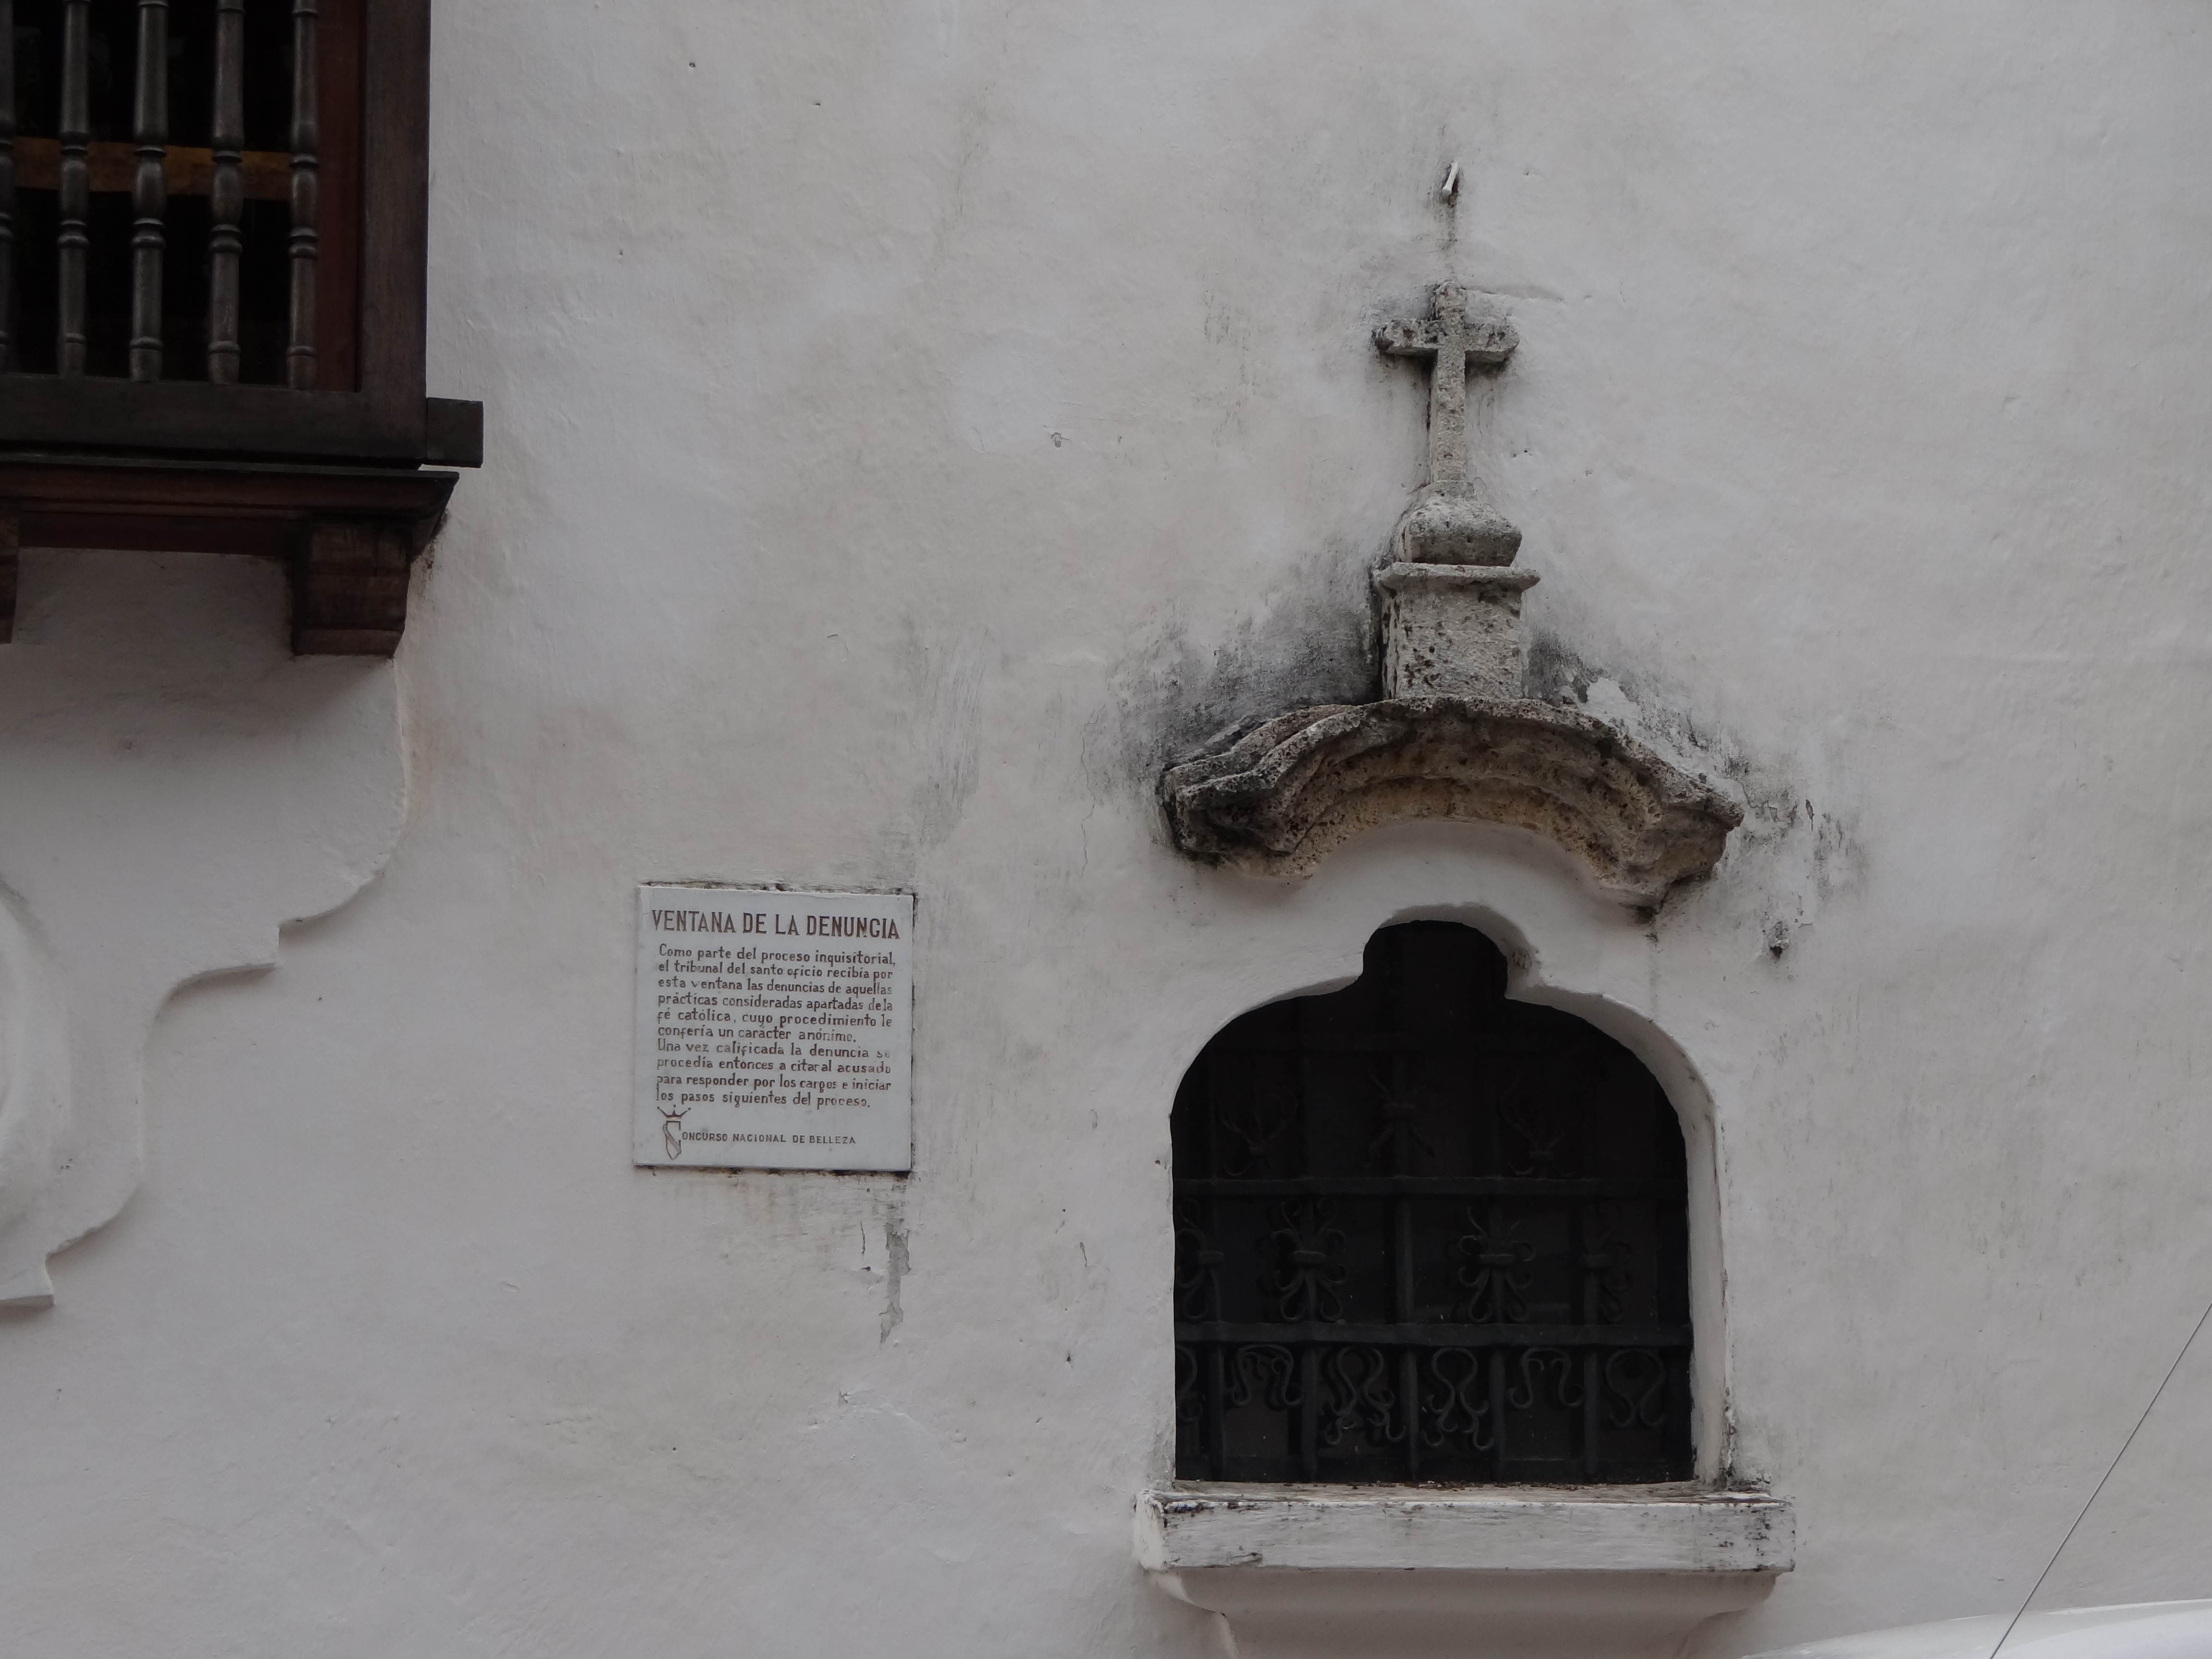 Ventana de la denuncia. Palacio de La Inquisicion. Cartagena